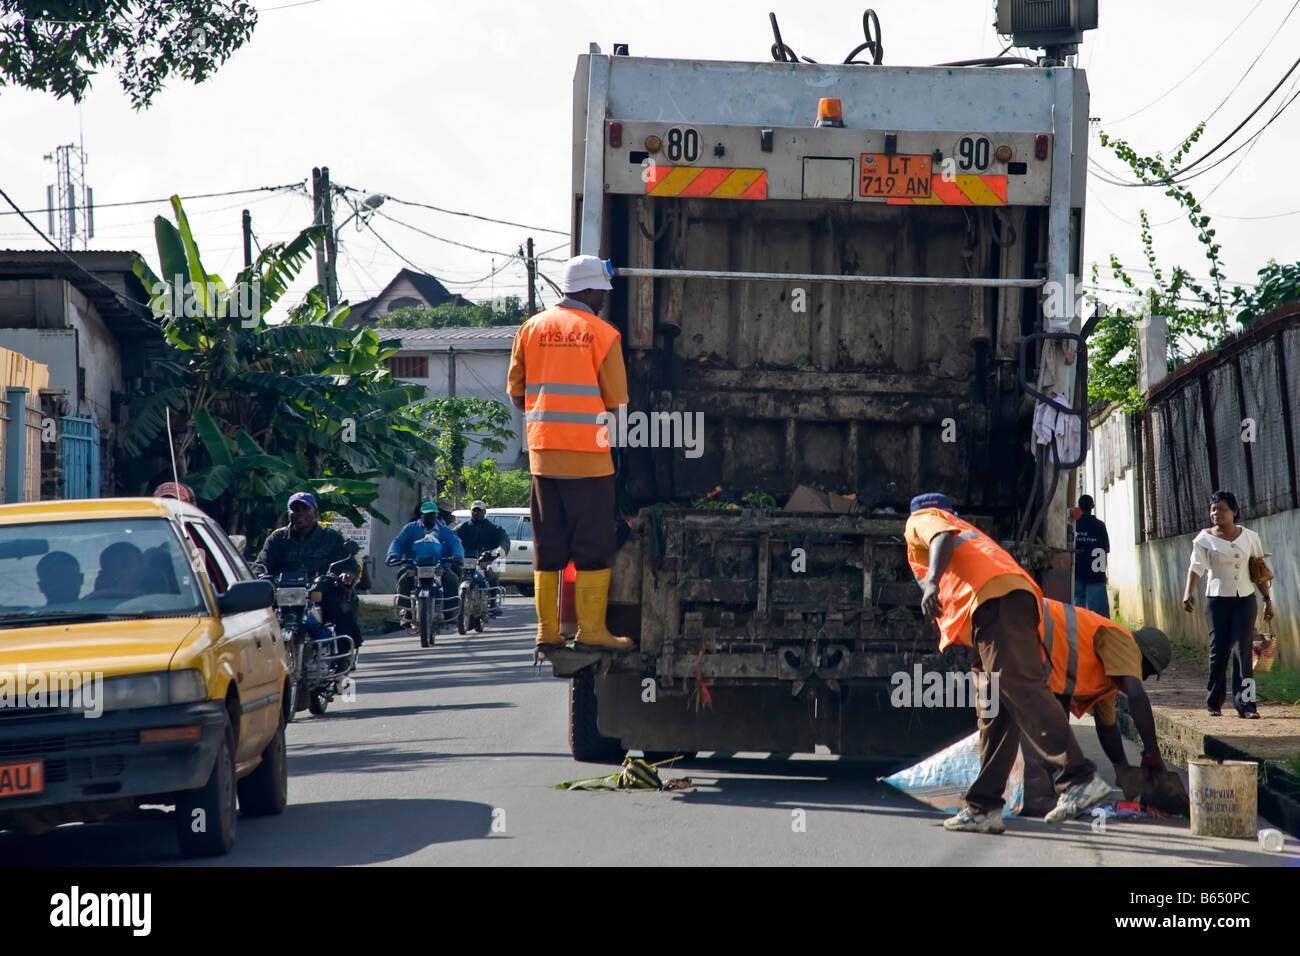 Collecte des ordures Douala Cameroun Afrique Banque D'Images